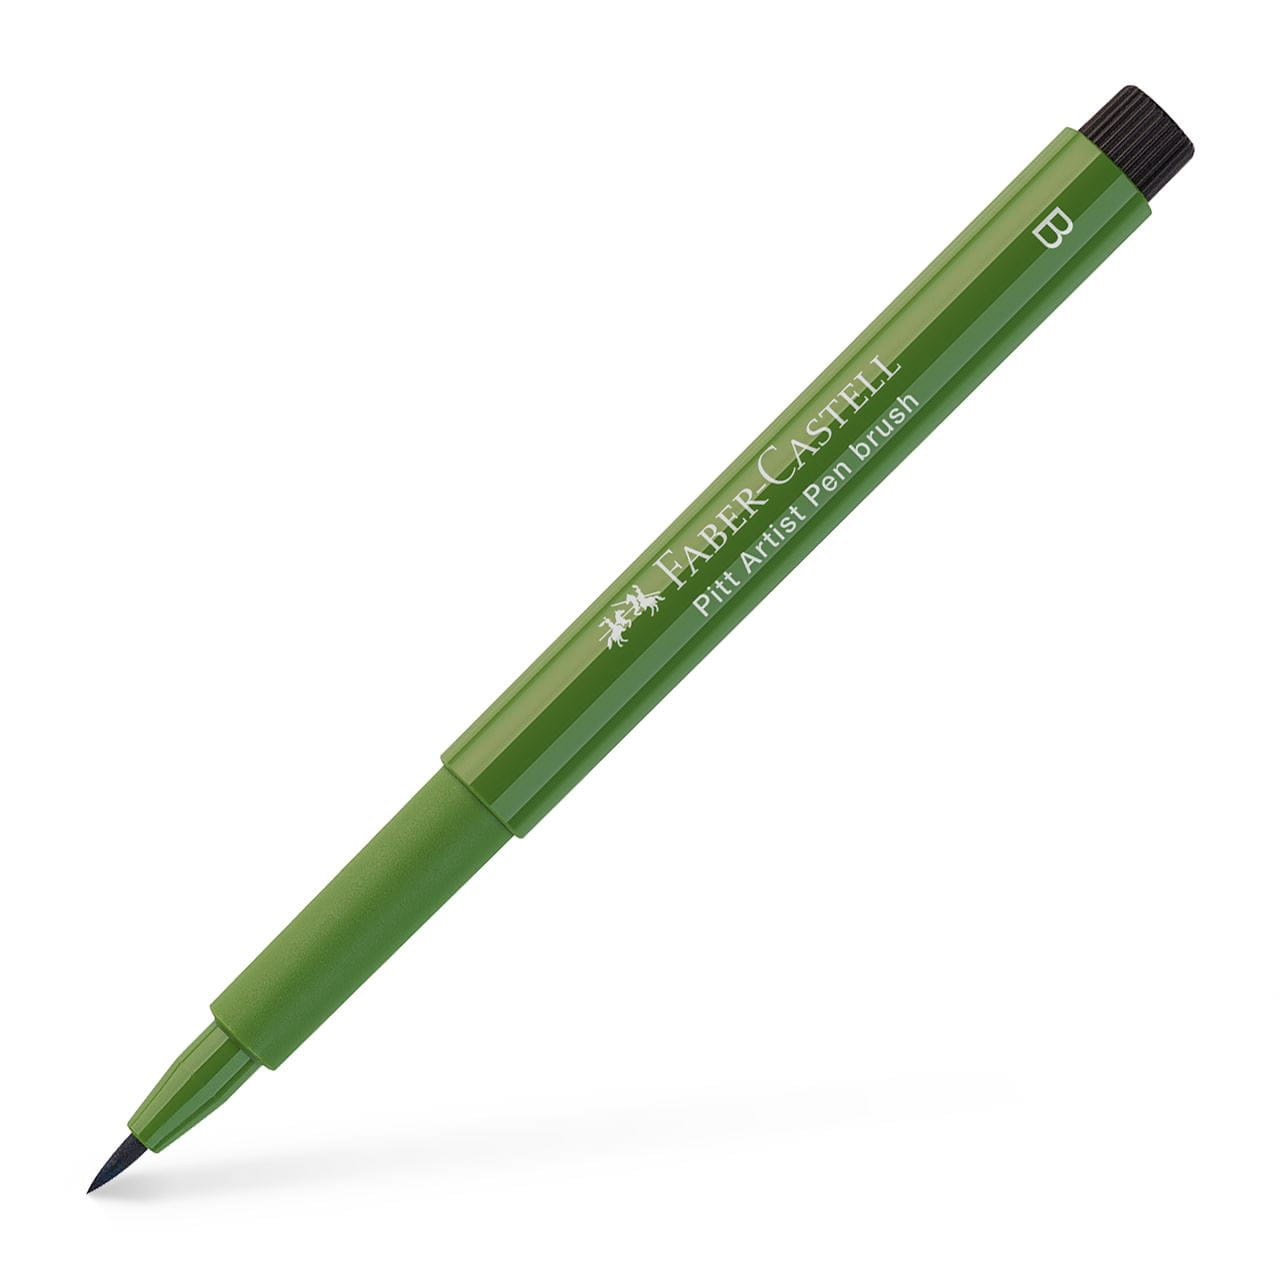 Faber-Castell - Pitt Artist Pen Brush India ink pen, chromium green opaque